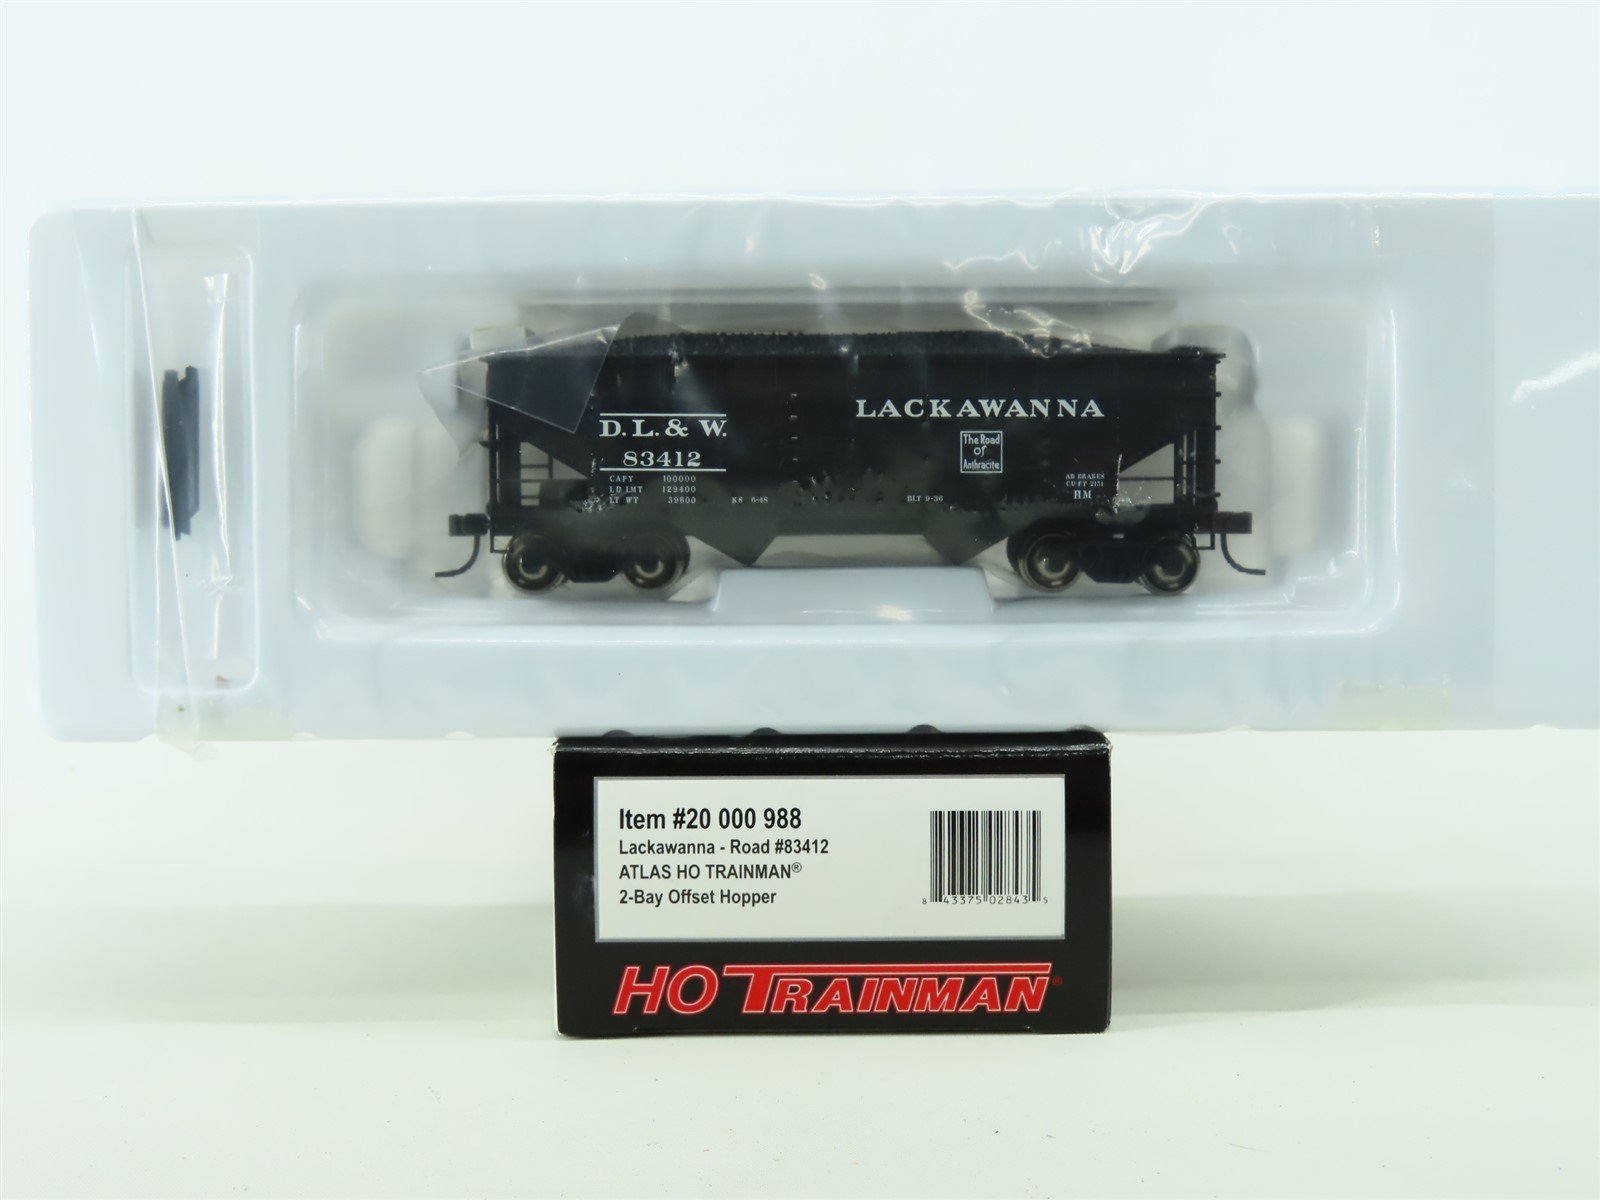 HO Scale Atlas Trainman #20000988 DL&W Lackawanna 2-Bay Hopper w/ Load #83412